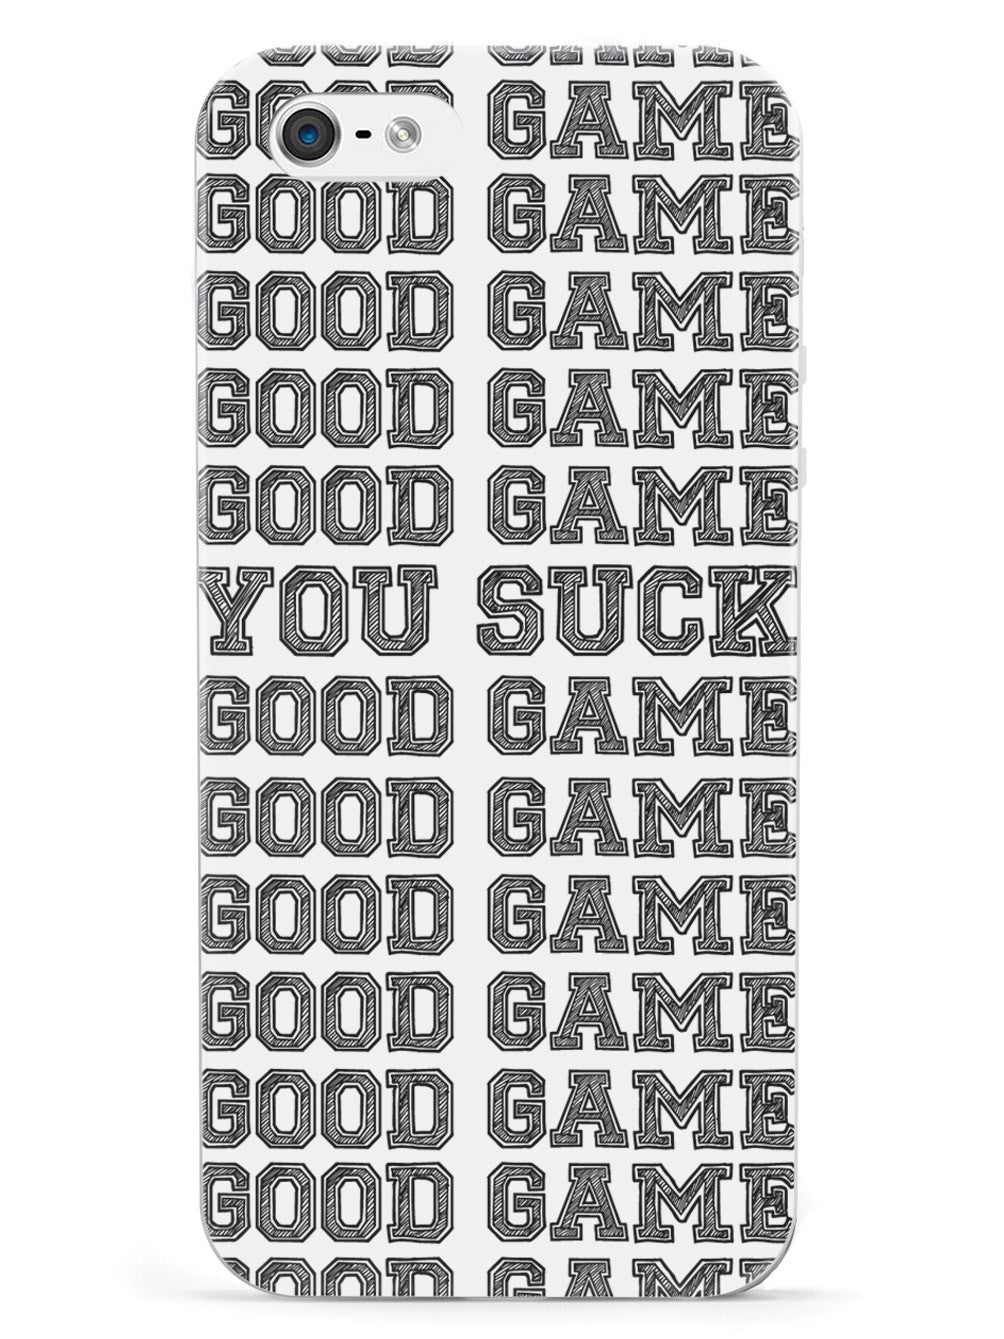 Good Game - You Suck - White Case